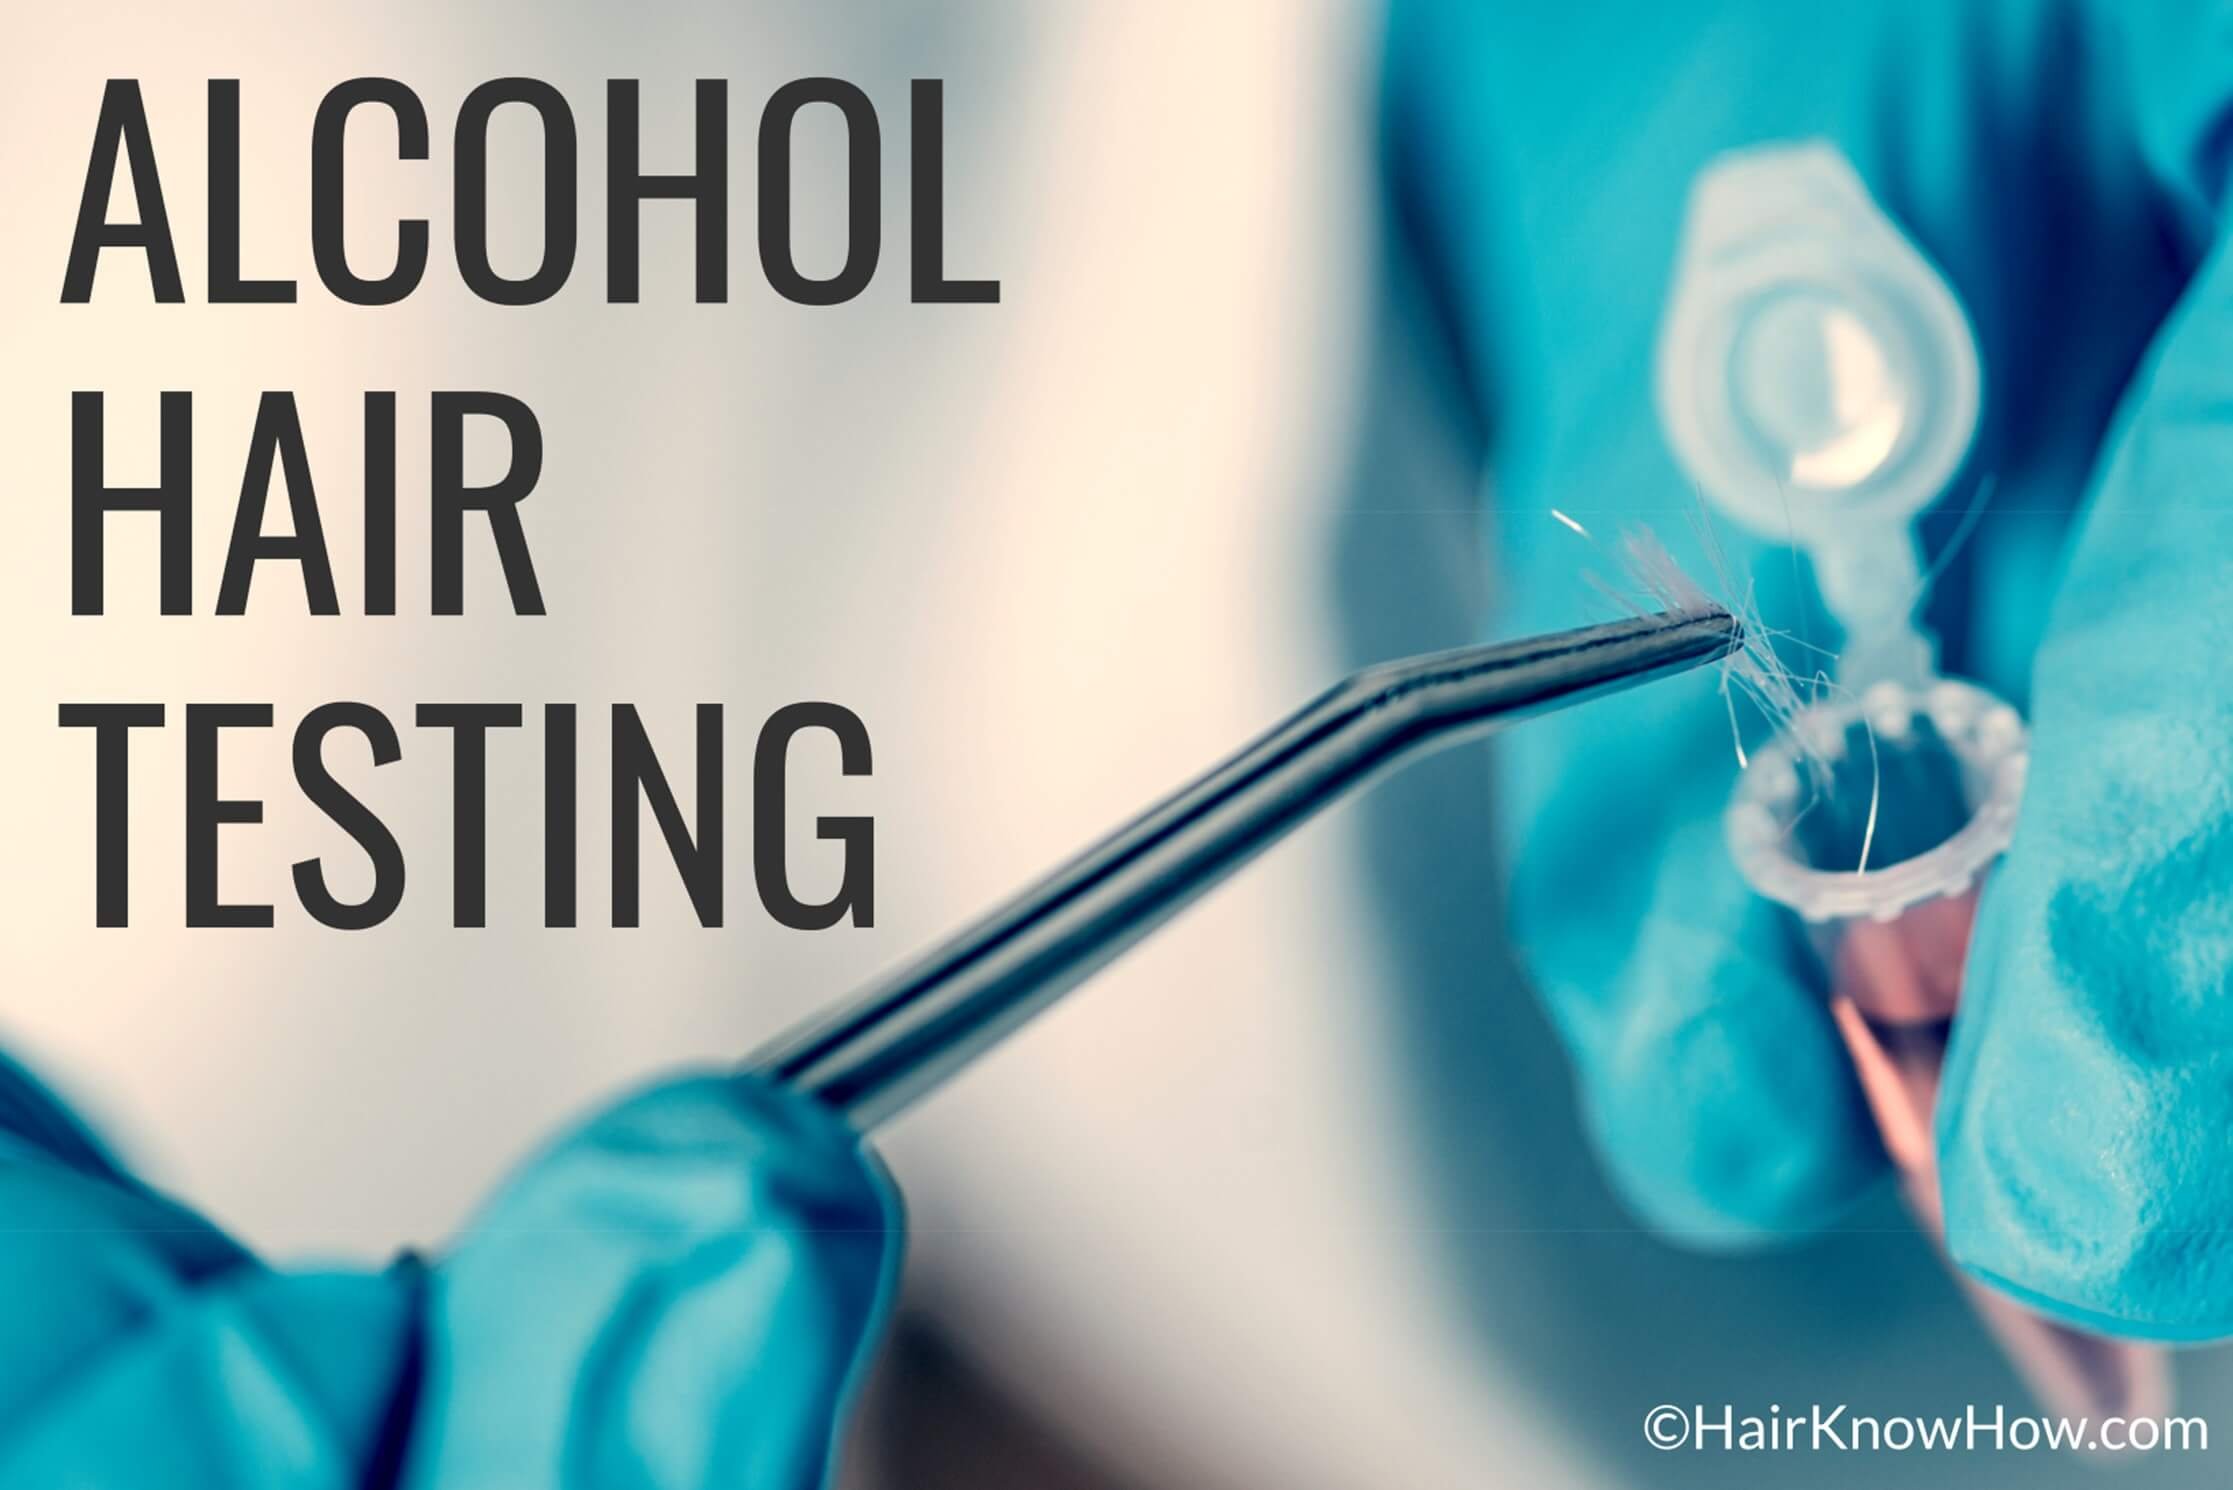 Alcohol intolerance tests: Medical vs. at-home kits